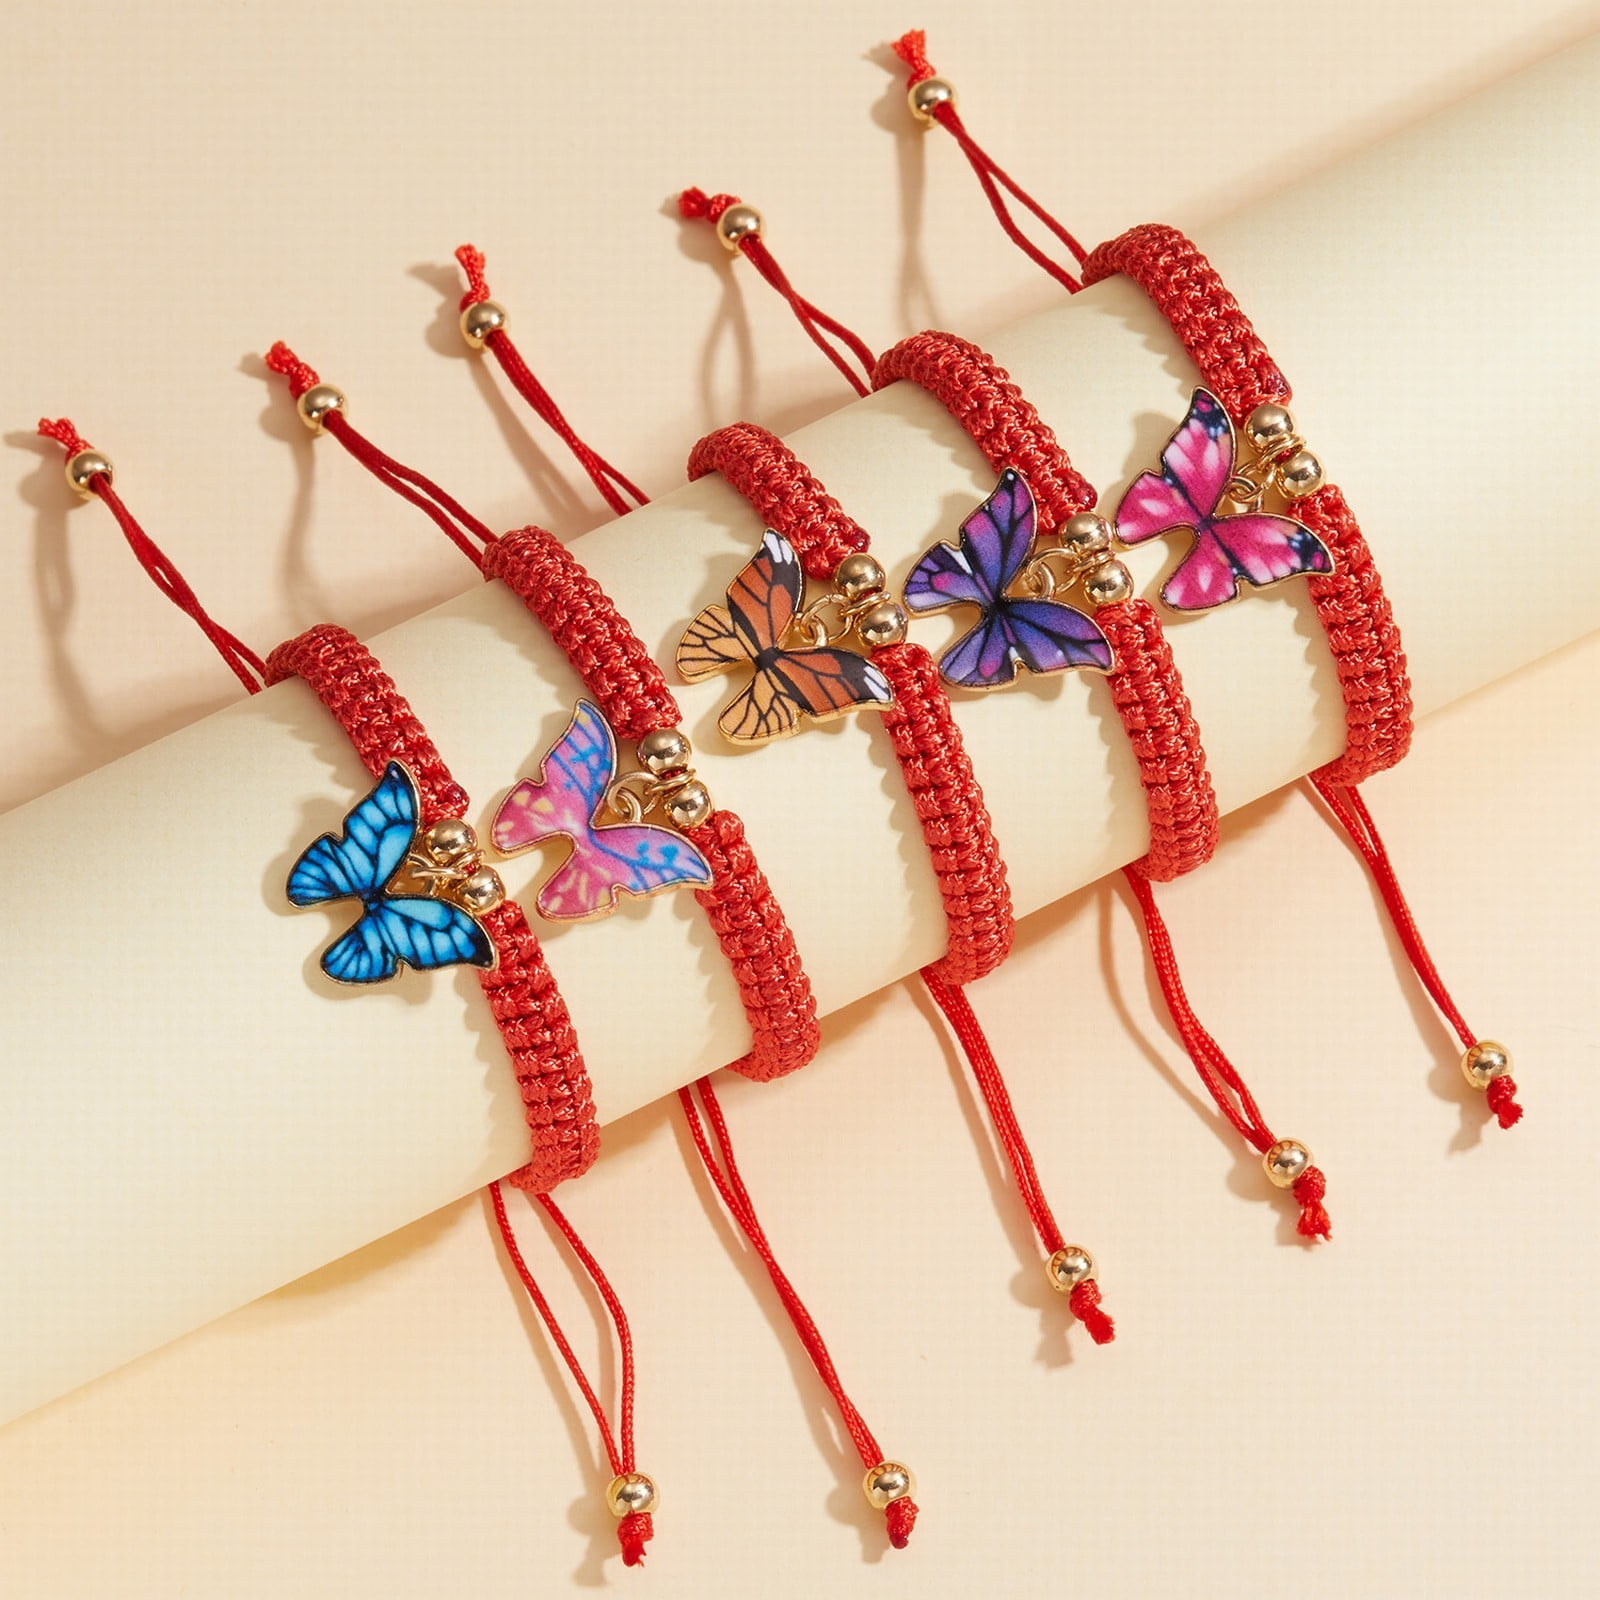 XIAQUJ Hand Woven Butterfly Pendant Bracelet Adjustable New Year Red Rope  Bracelet Bracelet with Red Rope Butterfly Pendant Bracelets G